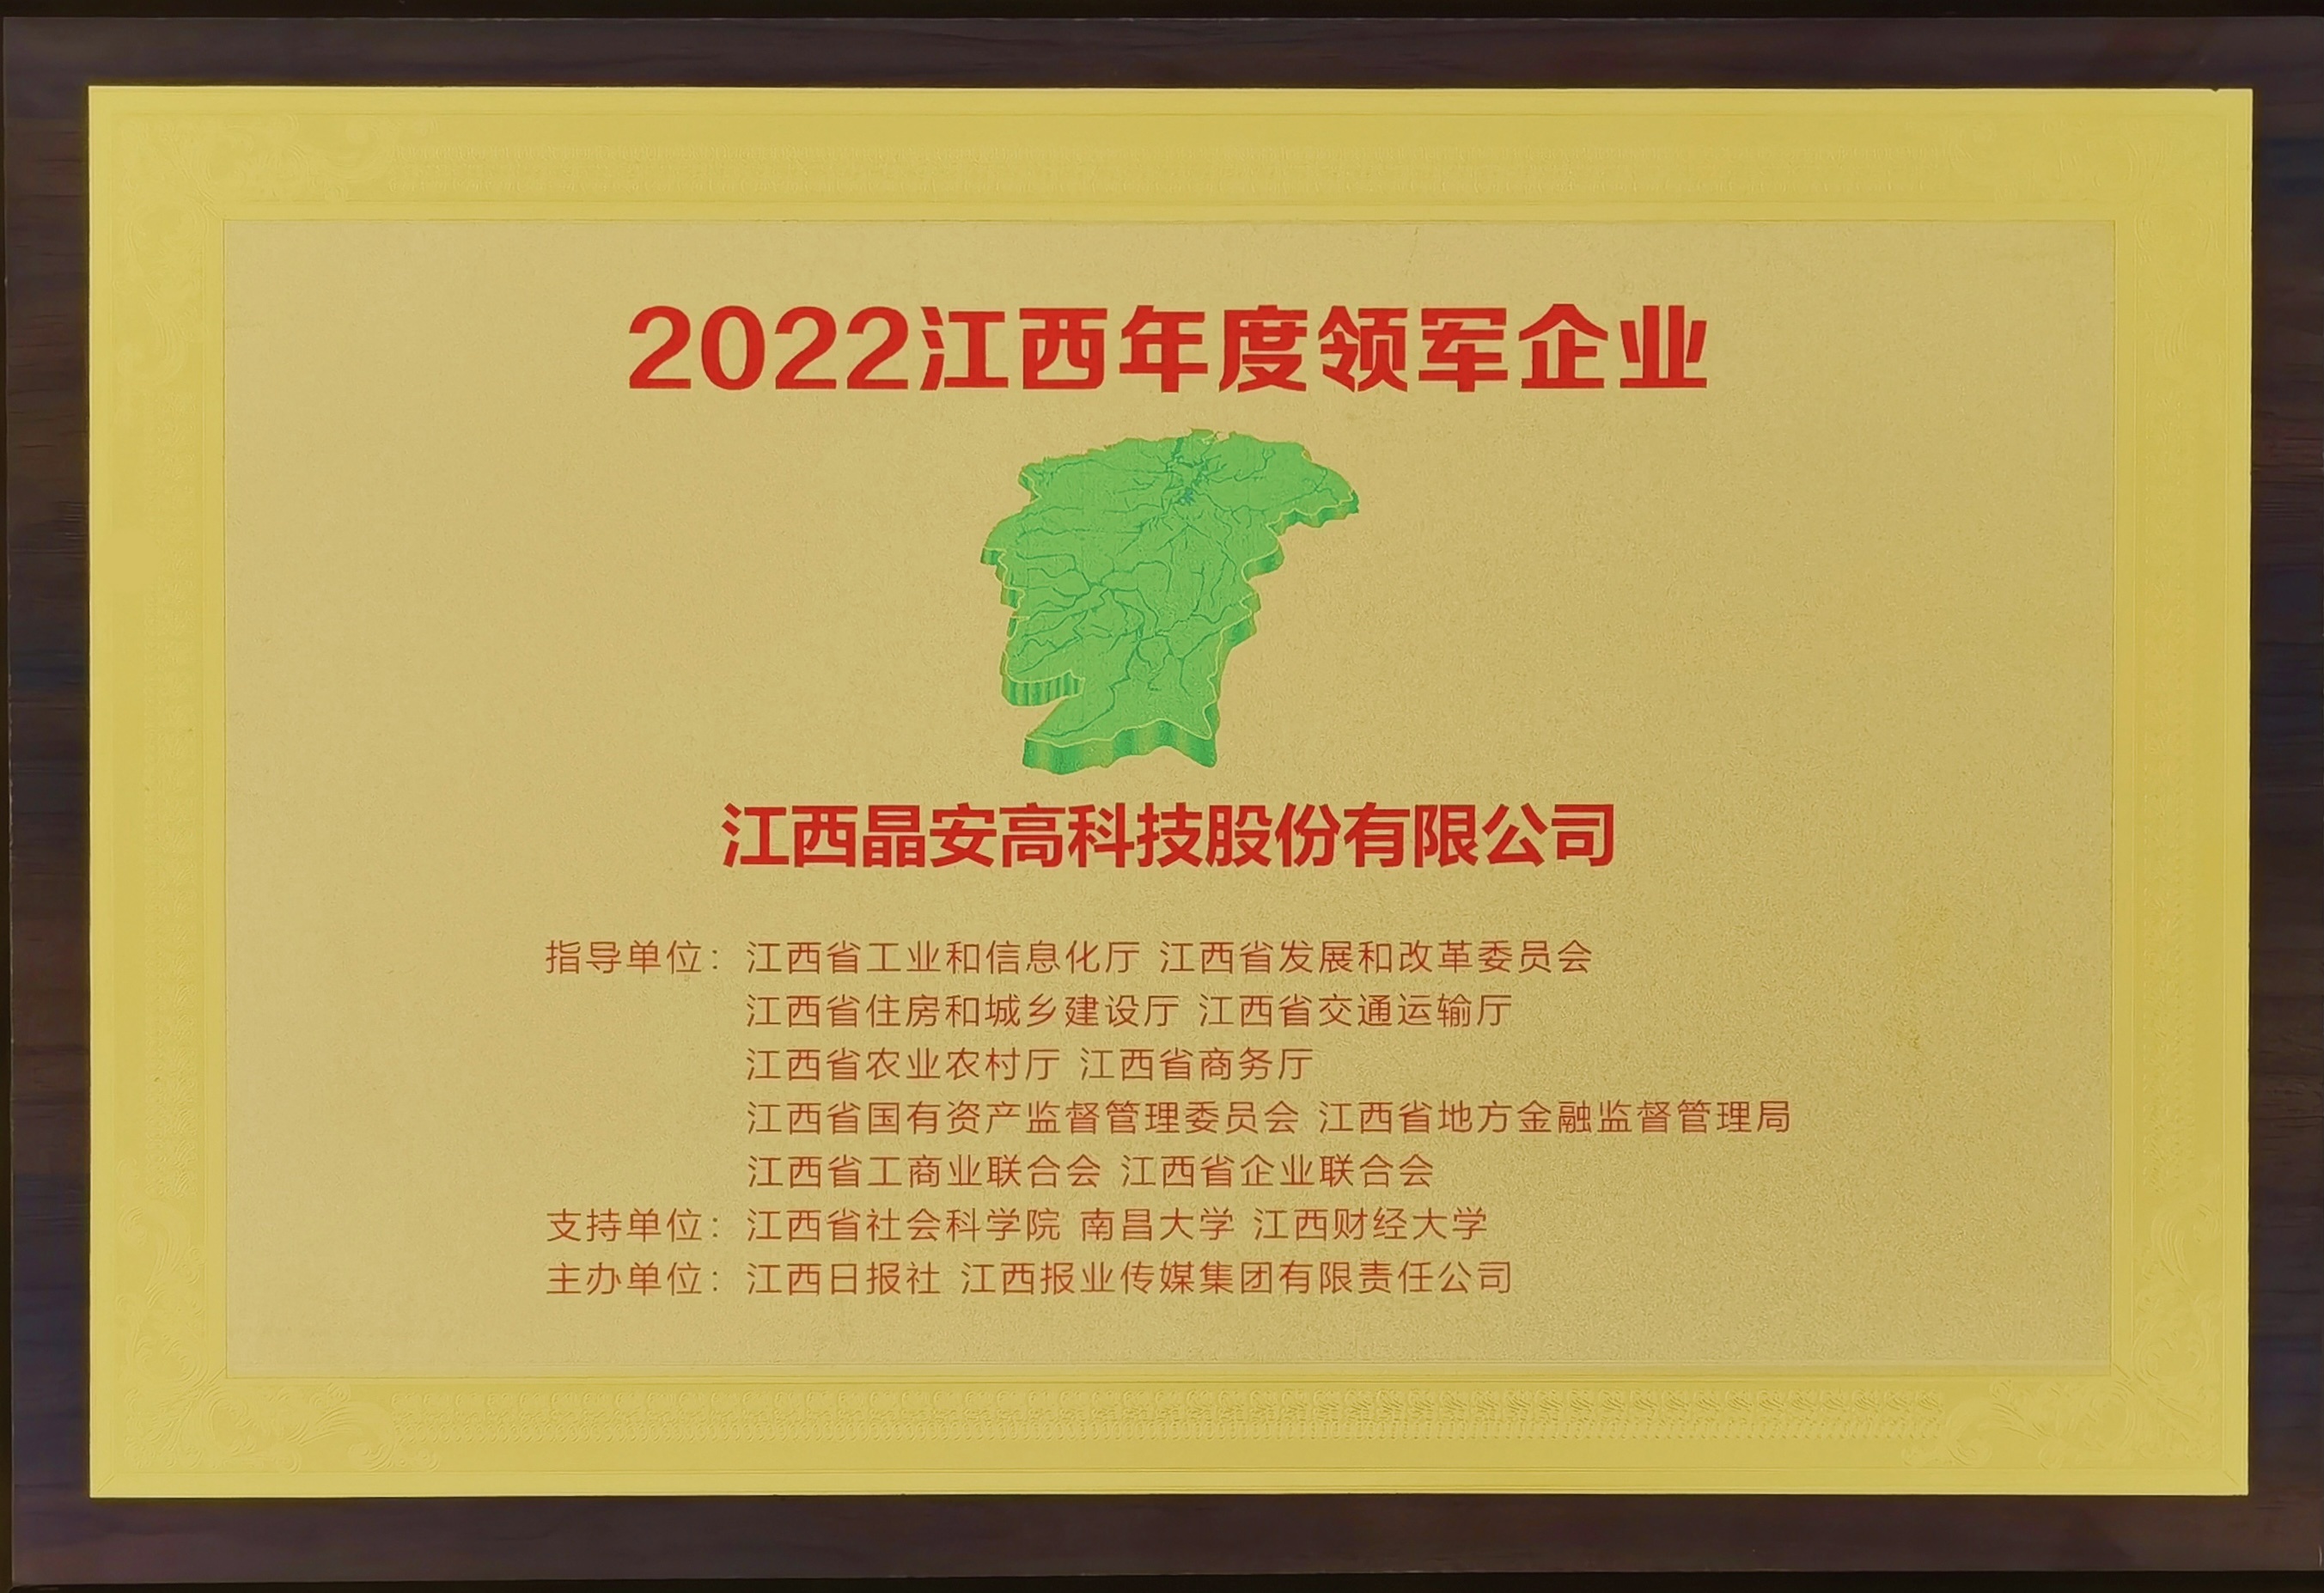 晶安高科獲“2022年度江西領軍企業”稱號